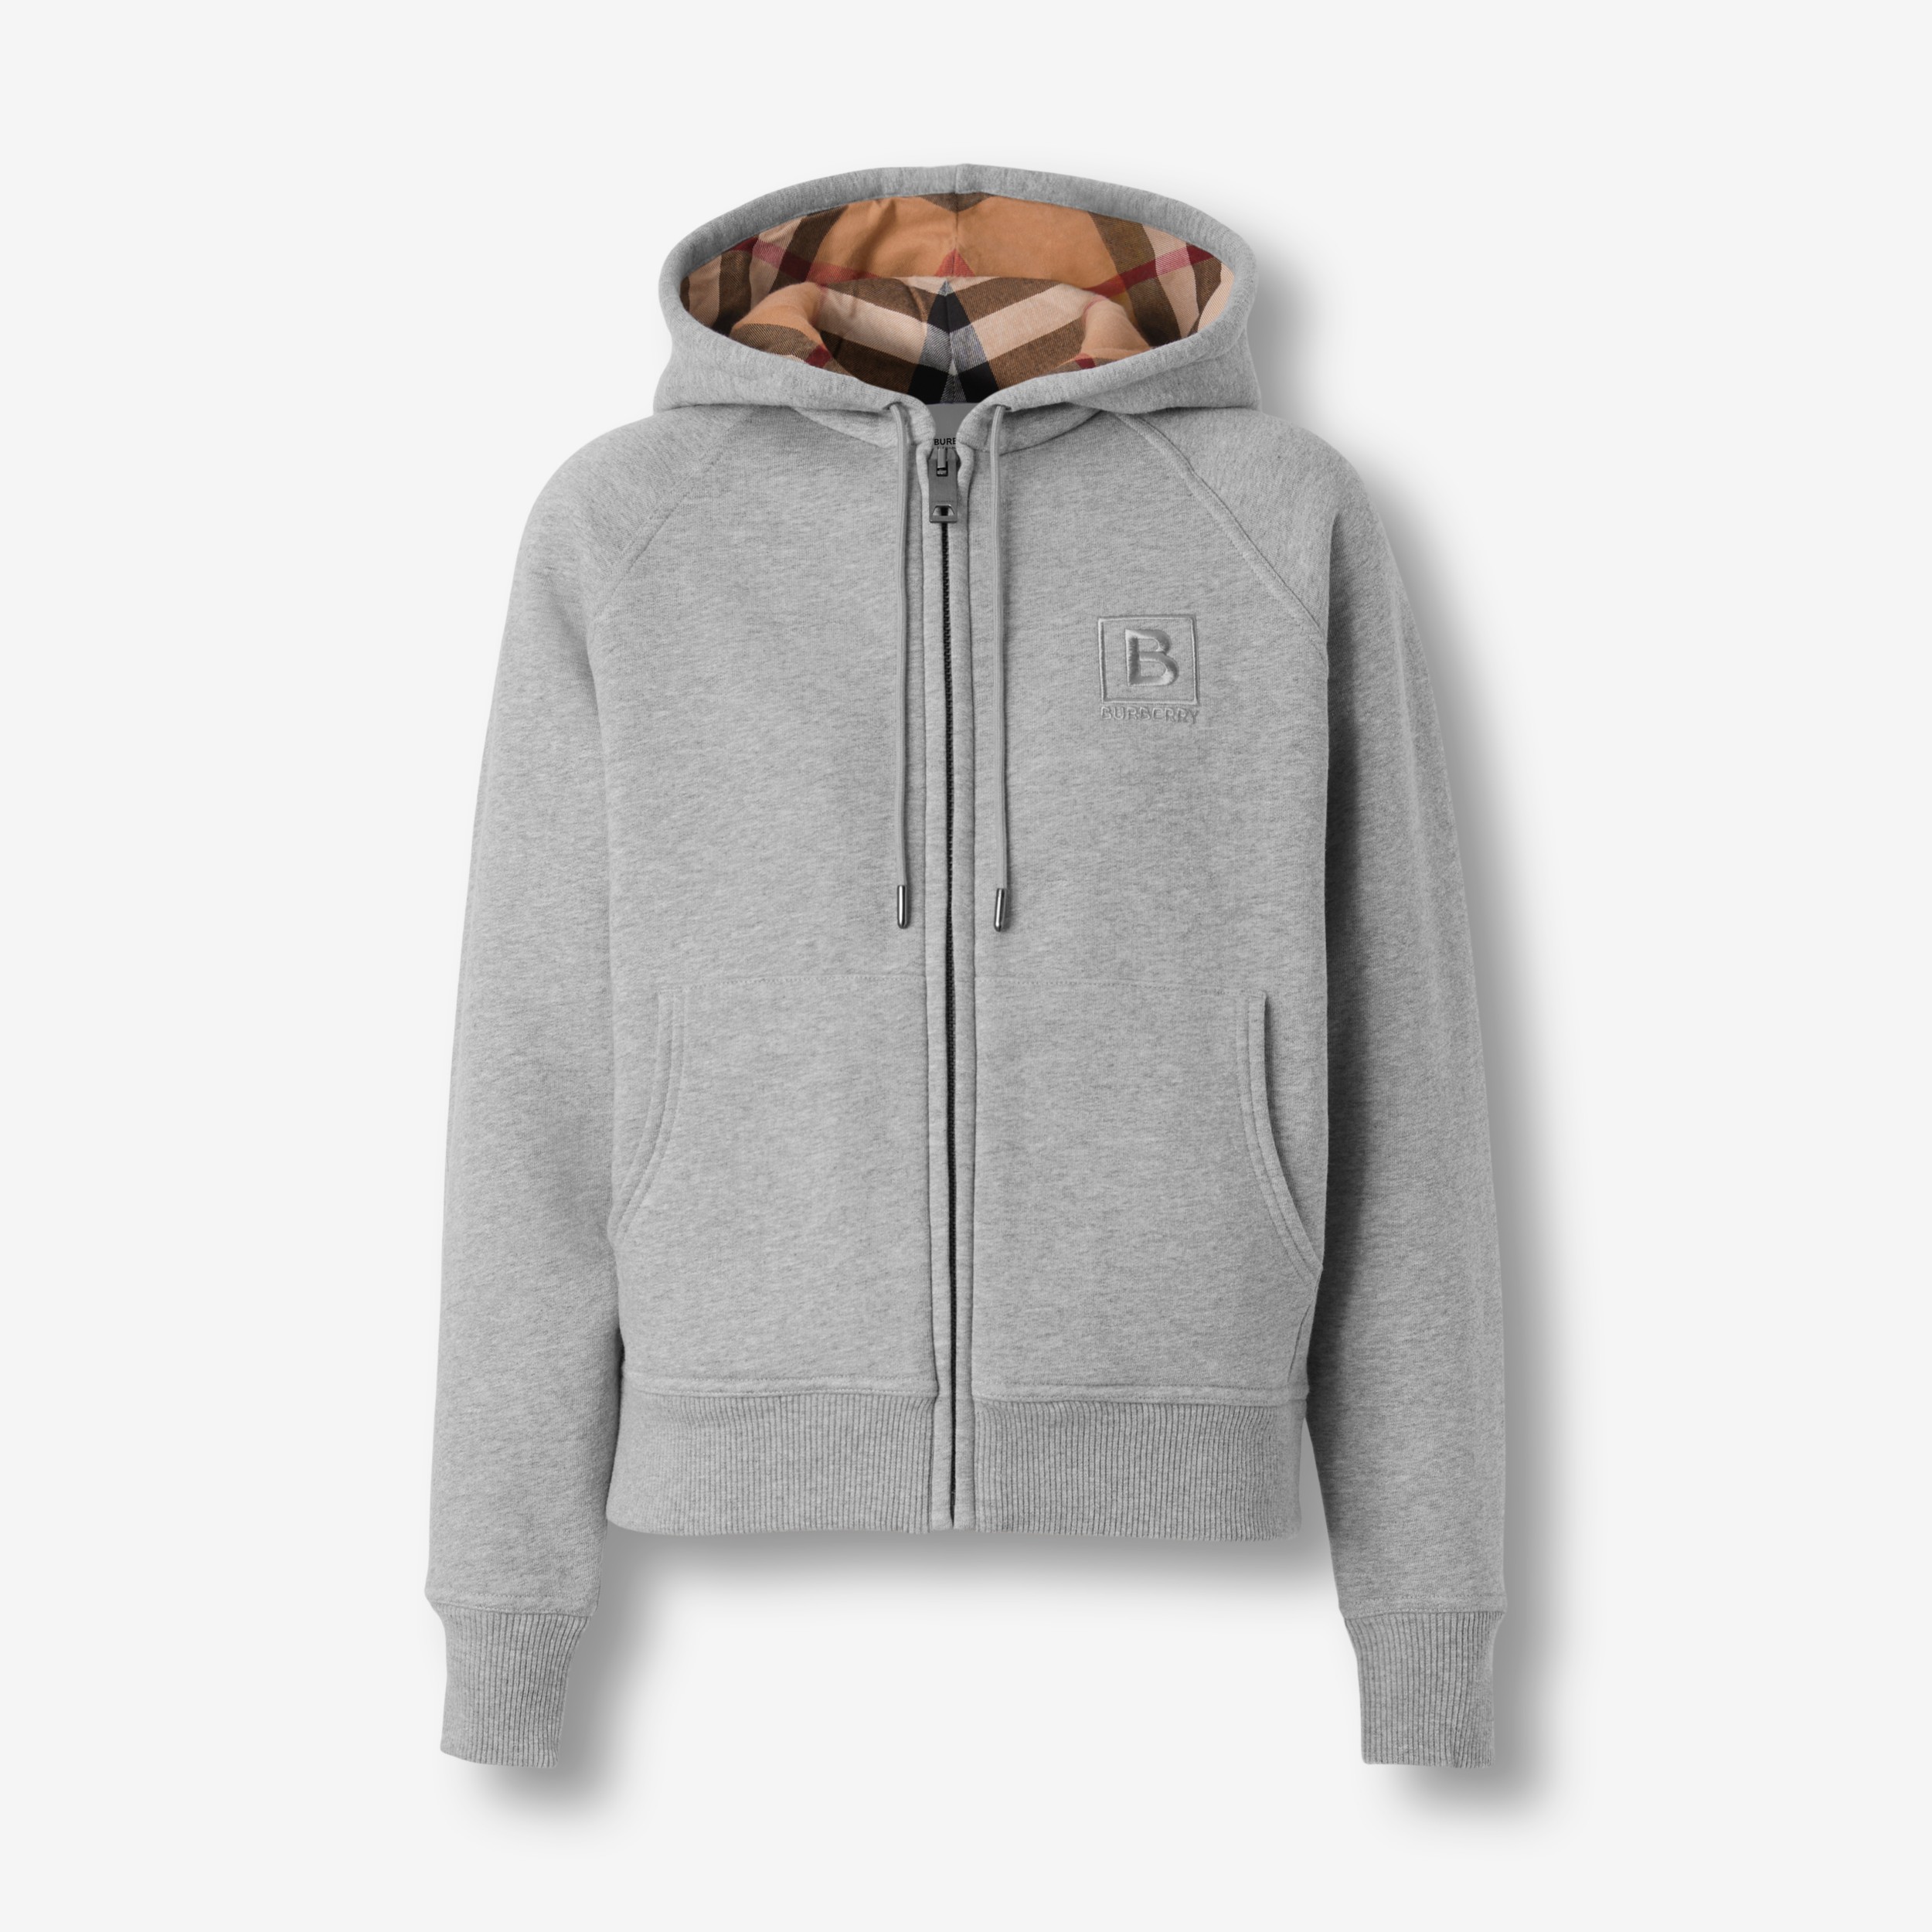 Arriba 35+ imagen burberry zip hoodie grey